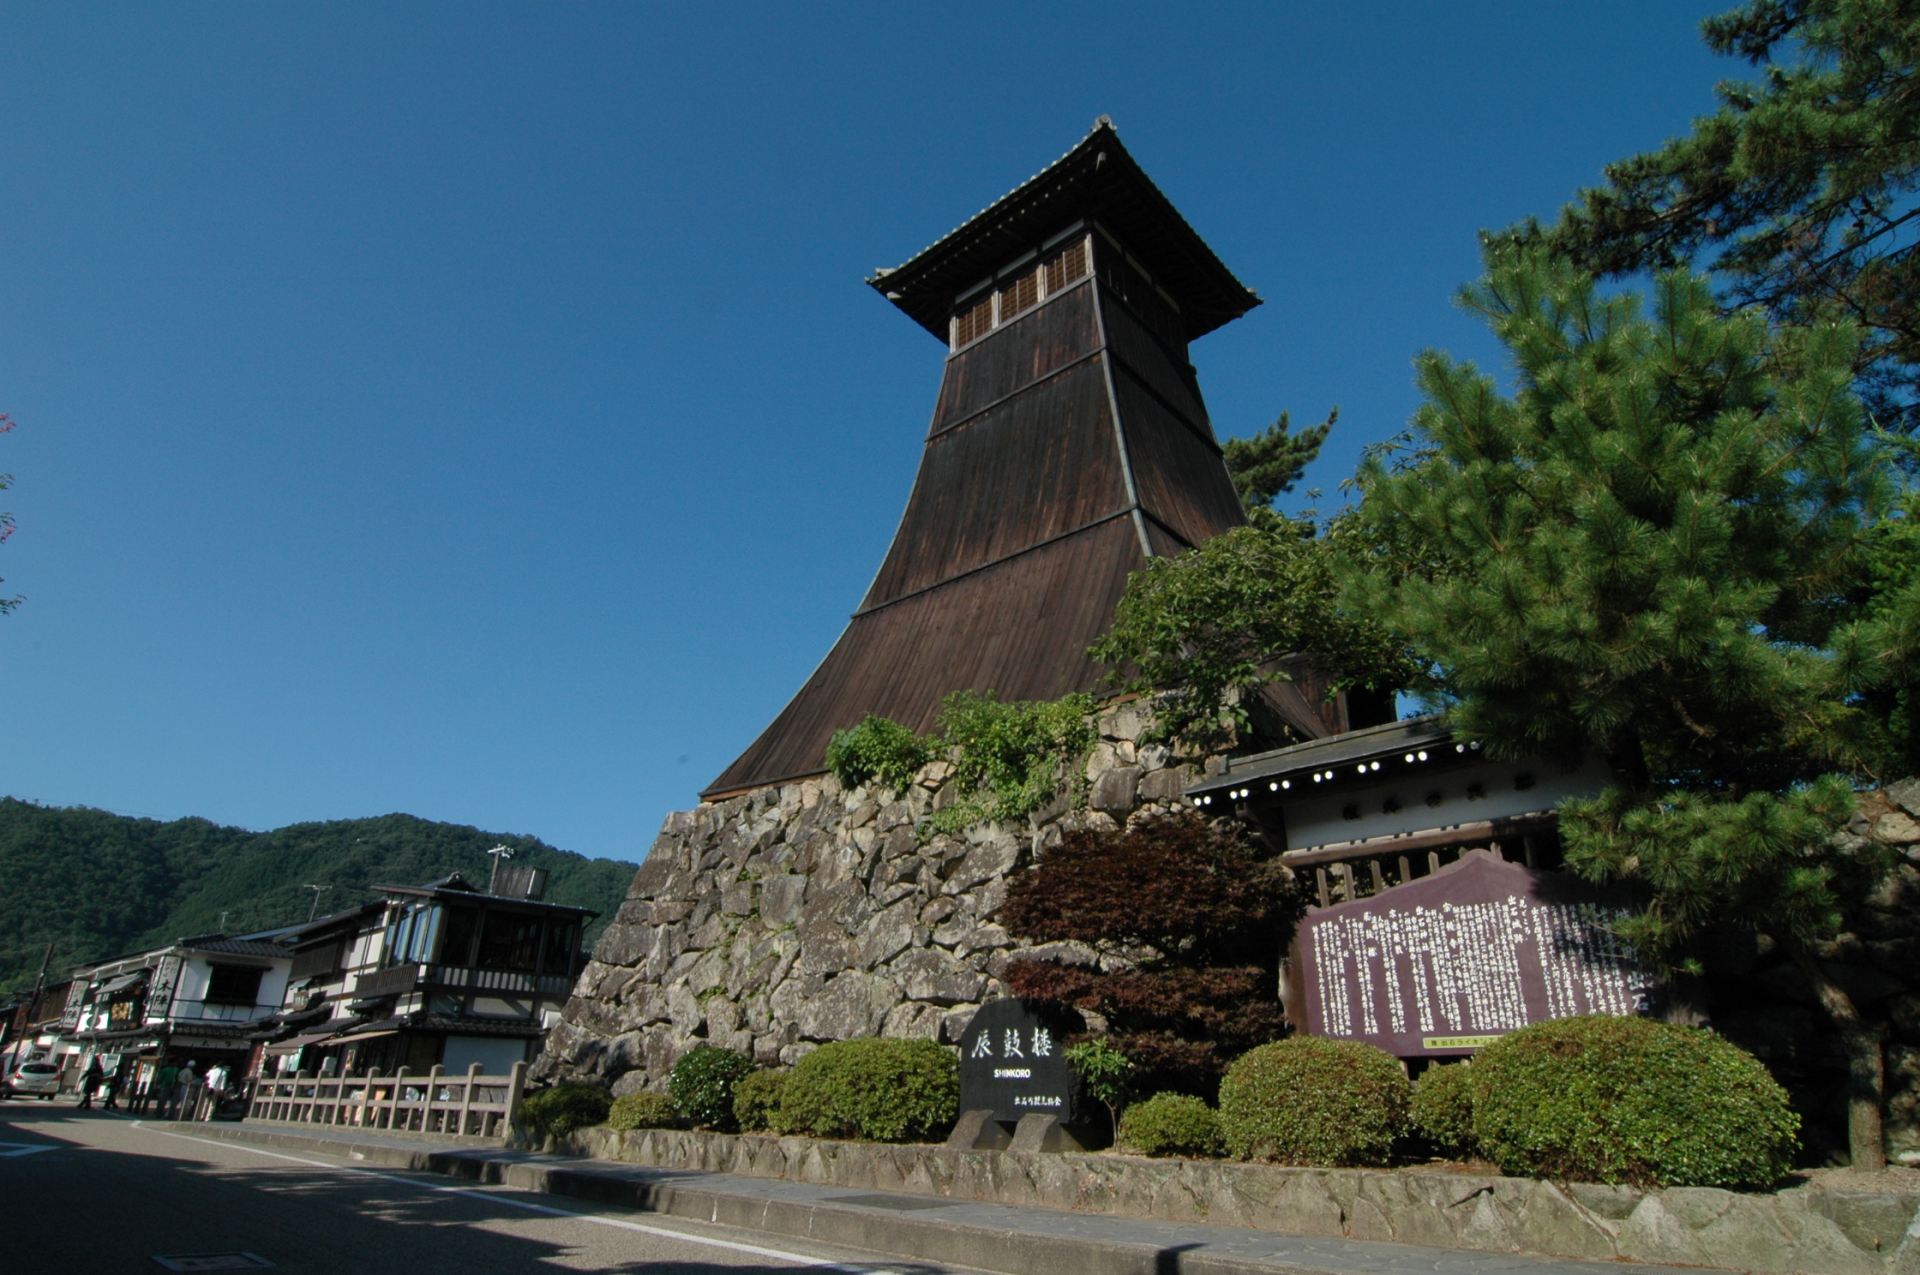 En la calle Otemae, la torre del reloj Shinkoro añade ambiente a la ciudad.